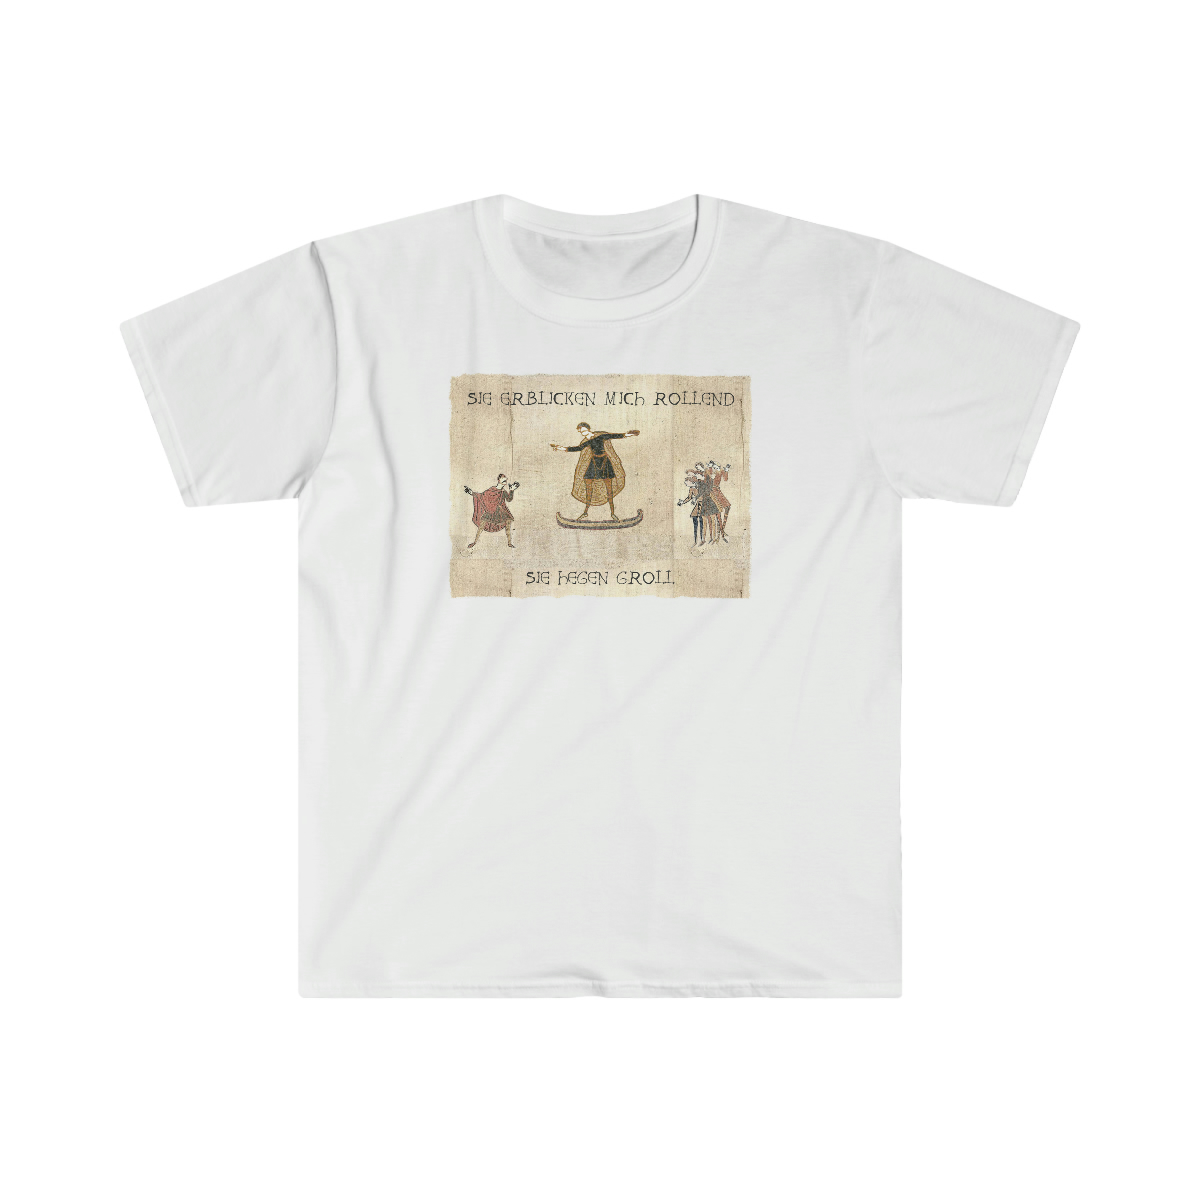 Featured image for “"Sie erblicken mich rollend" Bayeux Motiv T-Shirt, Unisex”